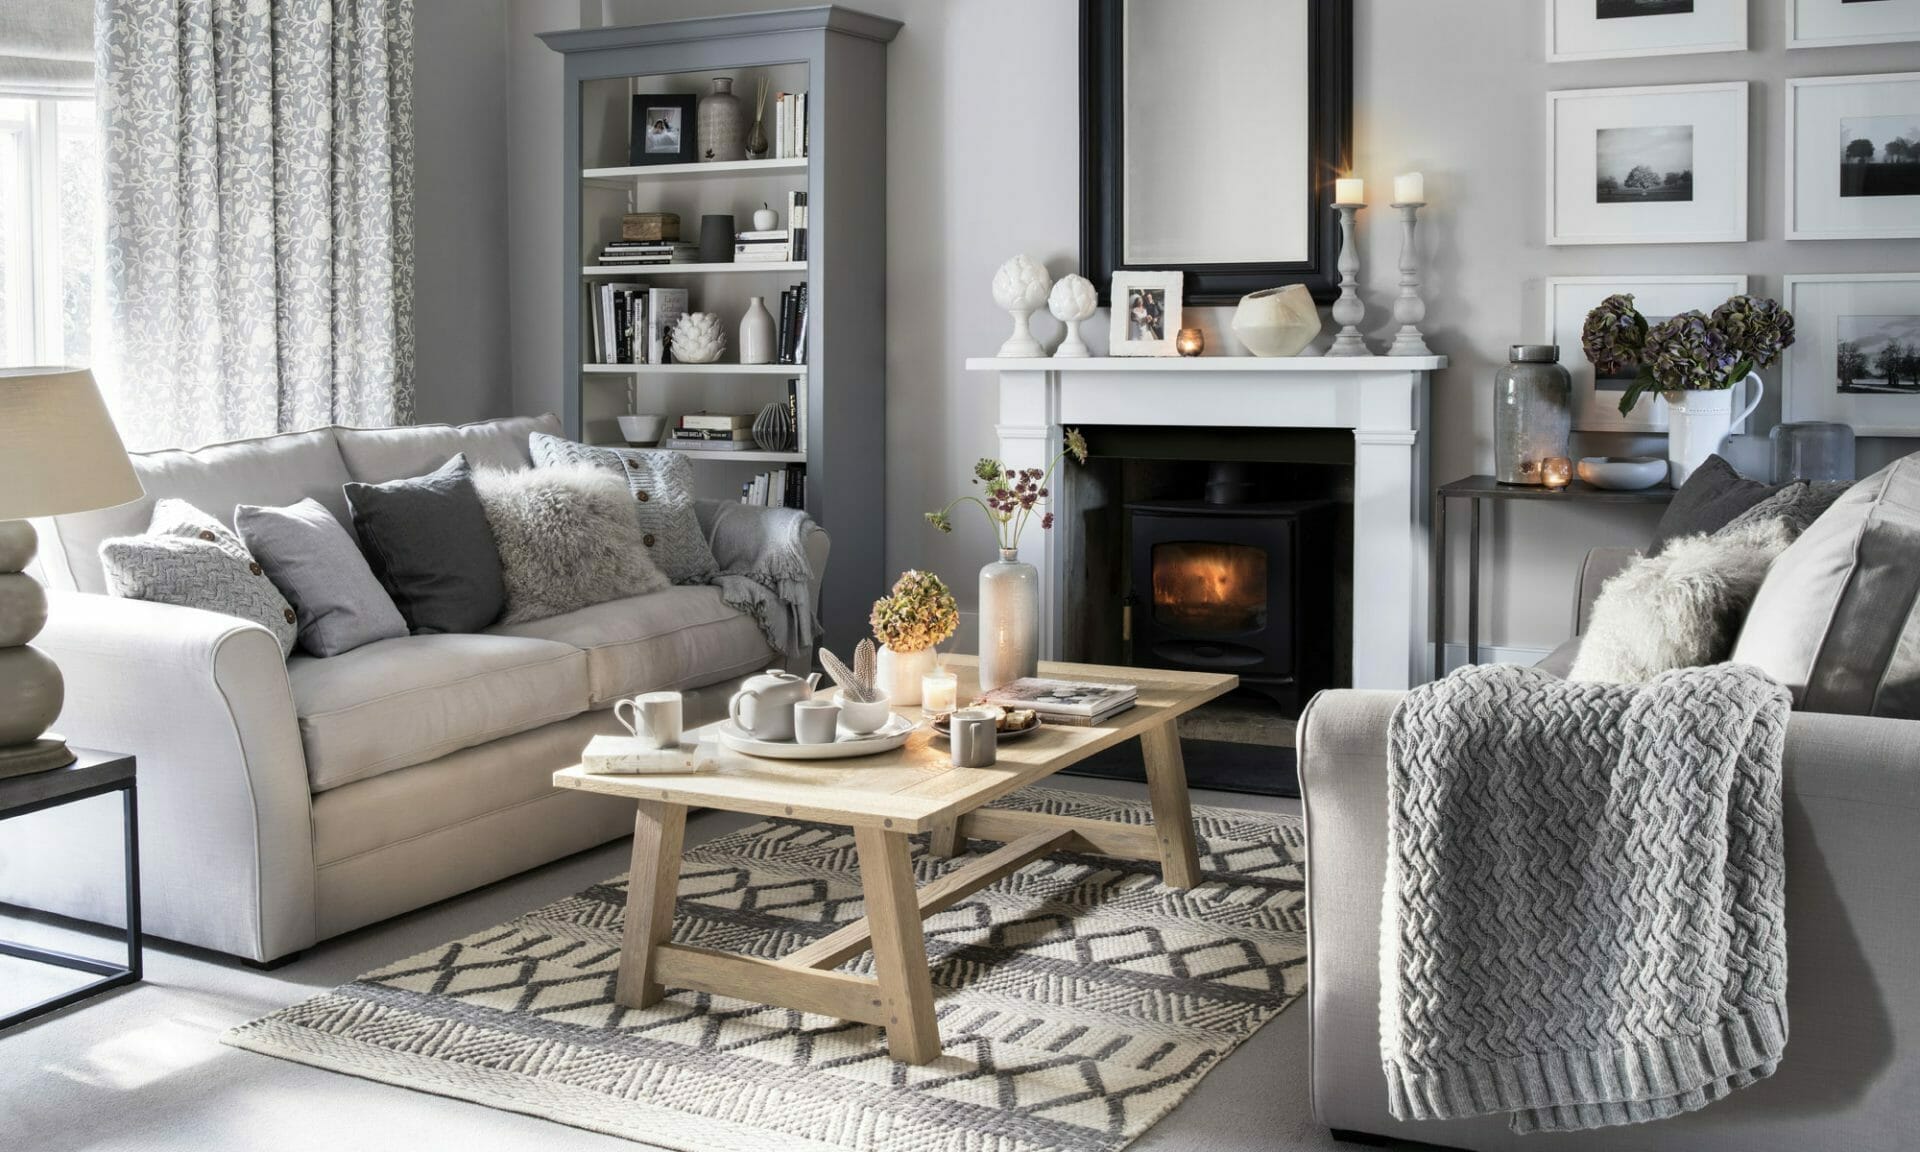 18 Winter Décor Ideas for a Cozy Home - Decorilla